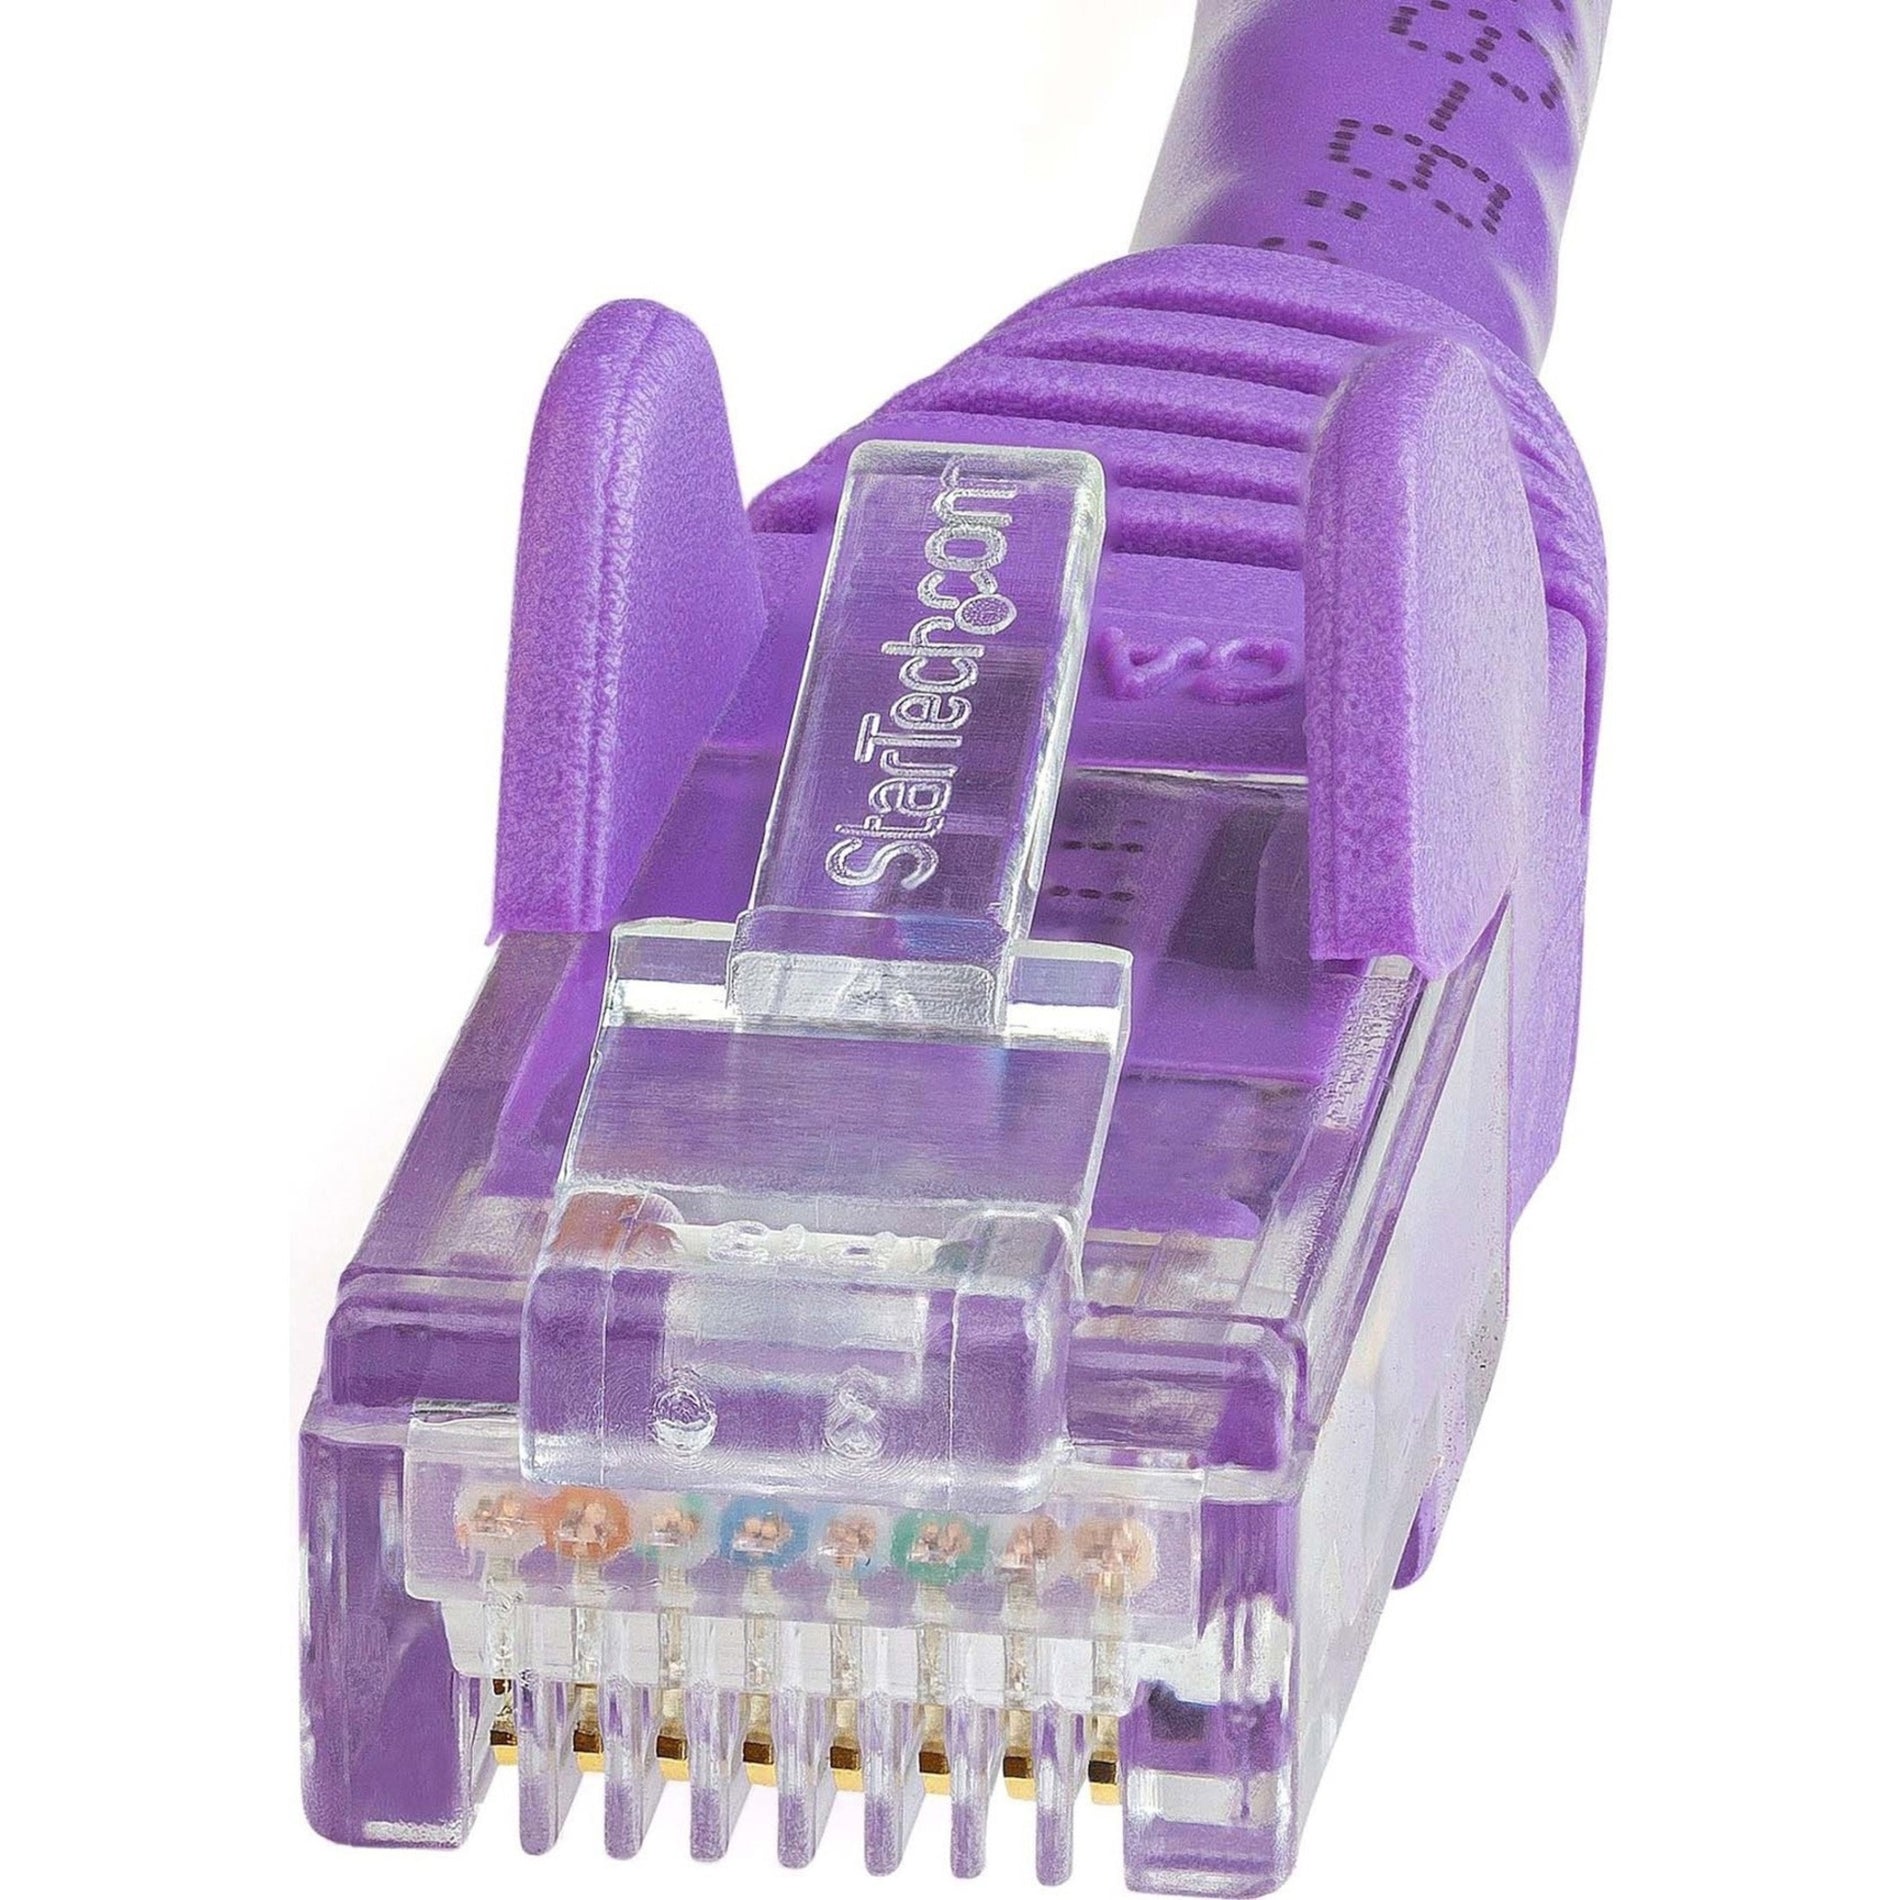 StarTech.com N6PATCH150PL Cat6 Patch Cable, 150ft Purple Ethernet Cable, Snagless RJ45 Connectors